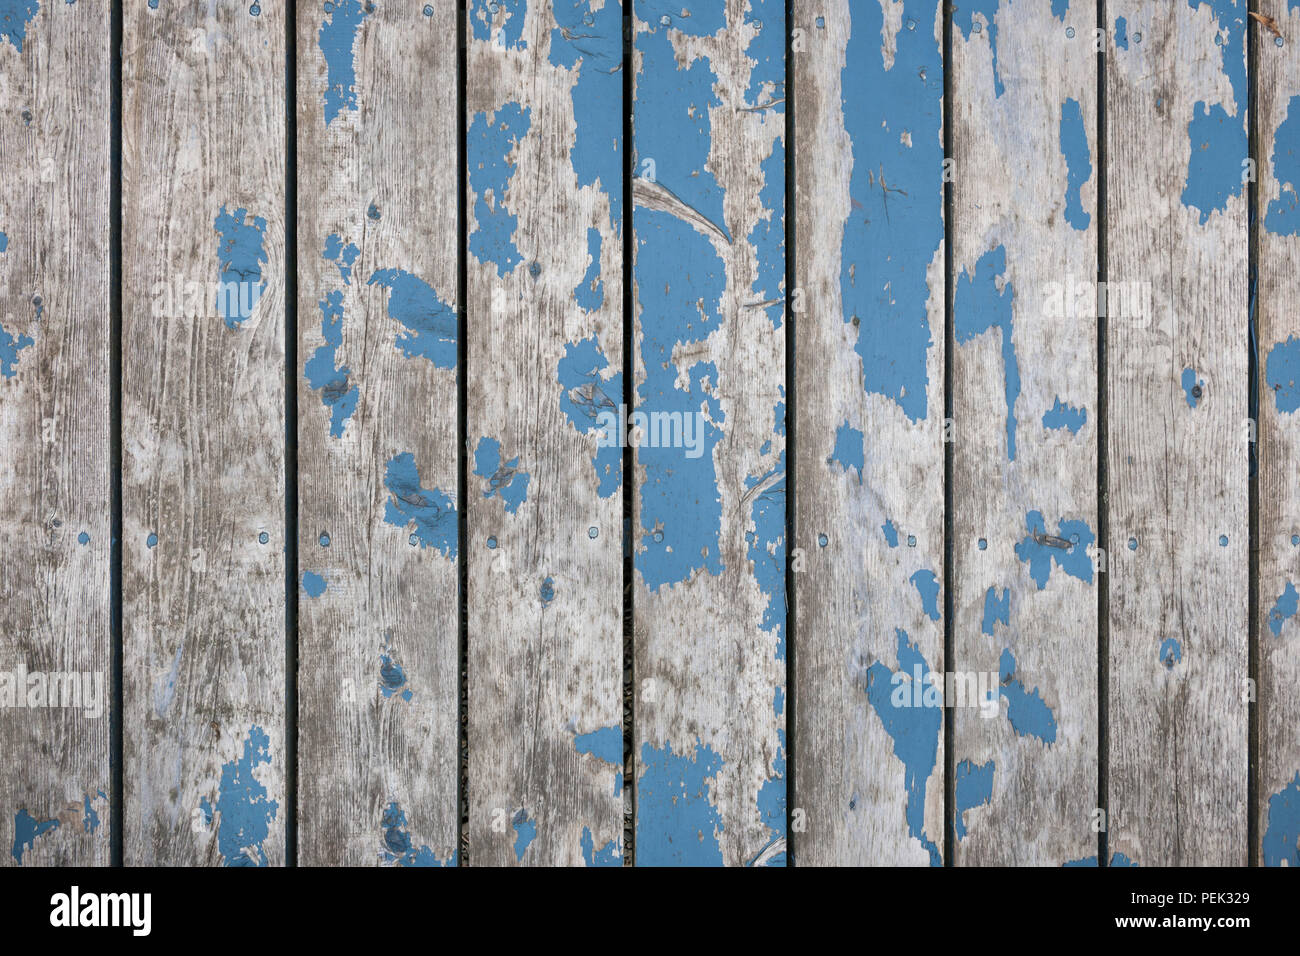 Fondo rústico de tableros de madera desgastada con restos de pintura azul antiguo Foto de stock